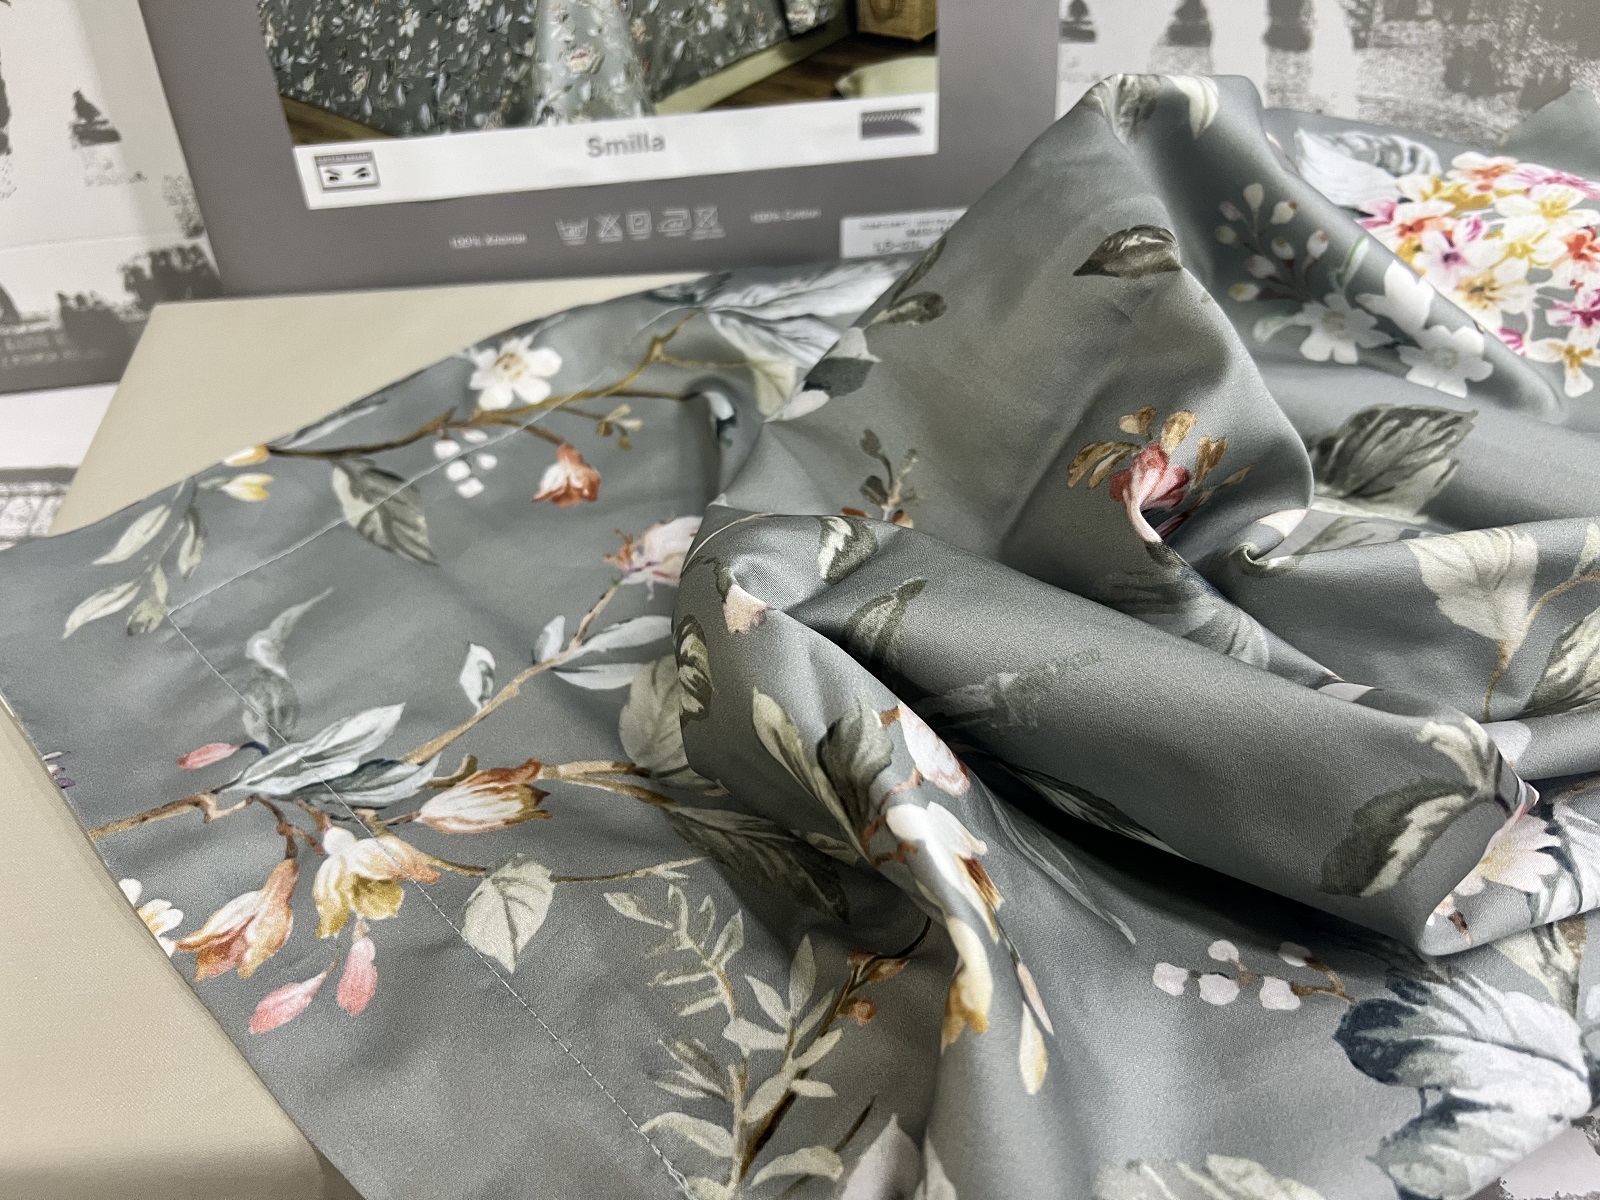 Смилла - комплект постельного белья от фабрики Котттон Дримс